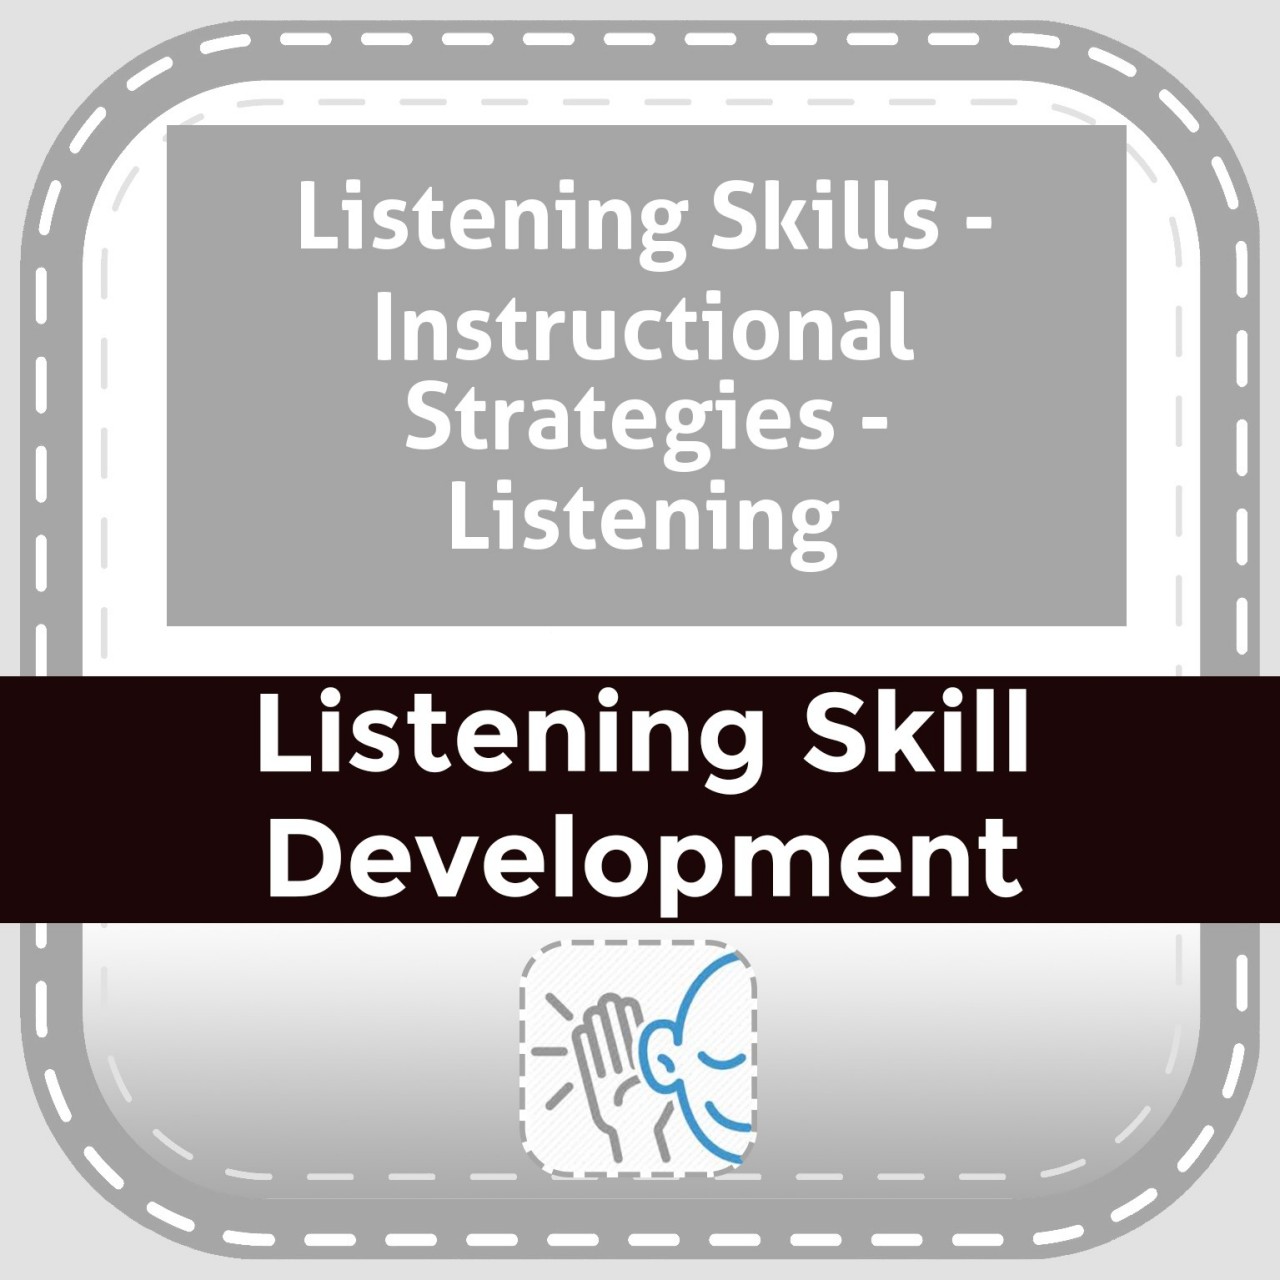 Listening Skills - Instructional Strategies - Listening